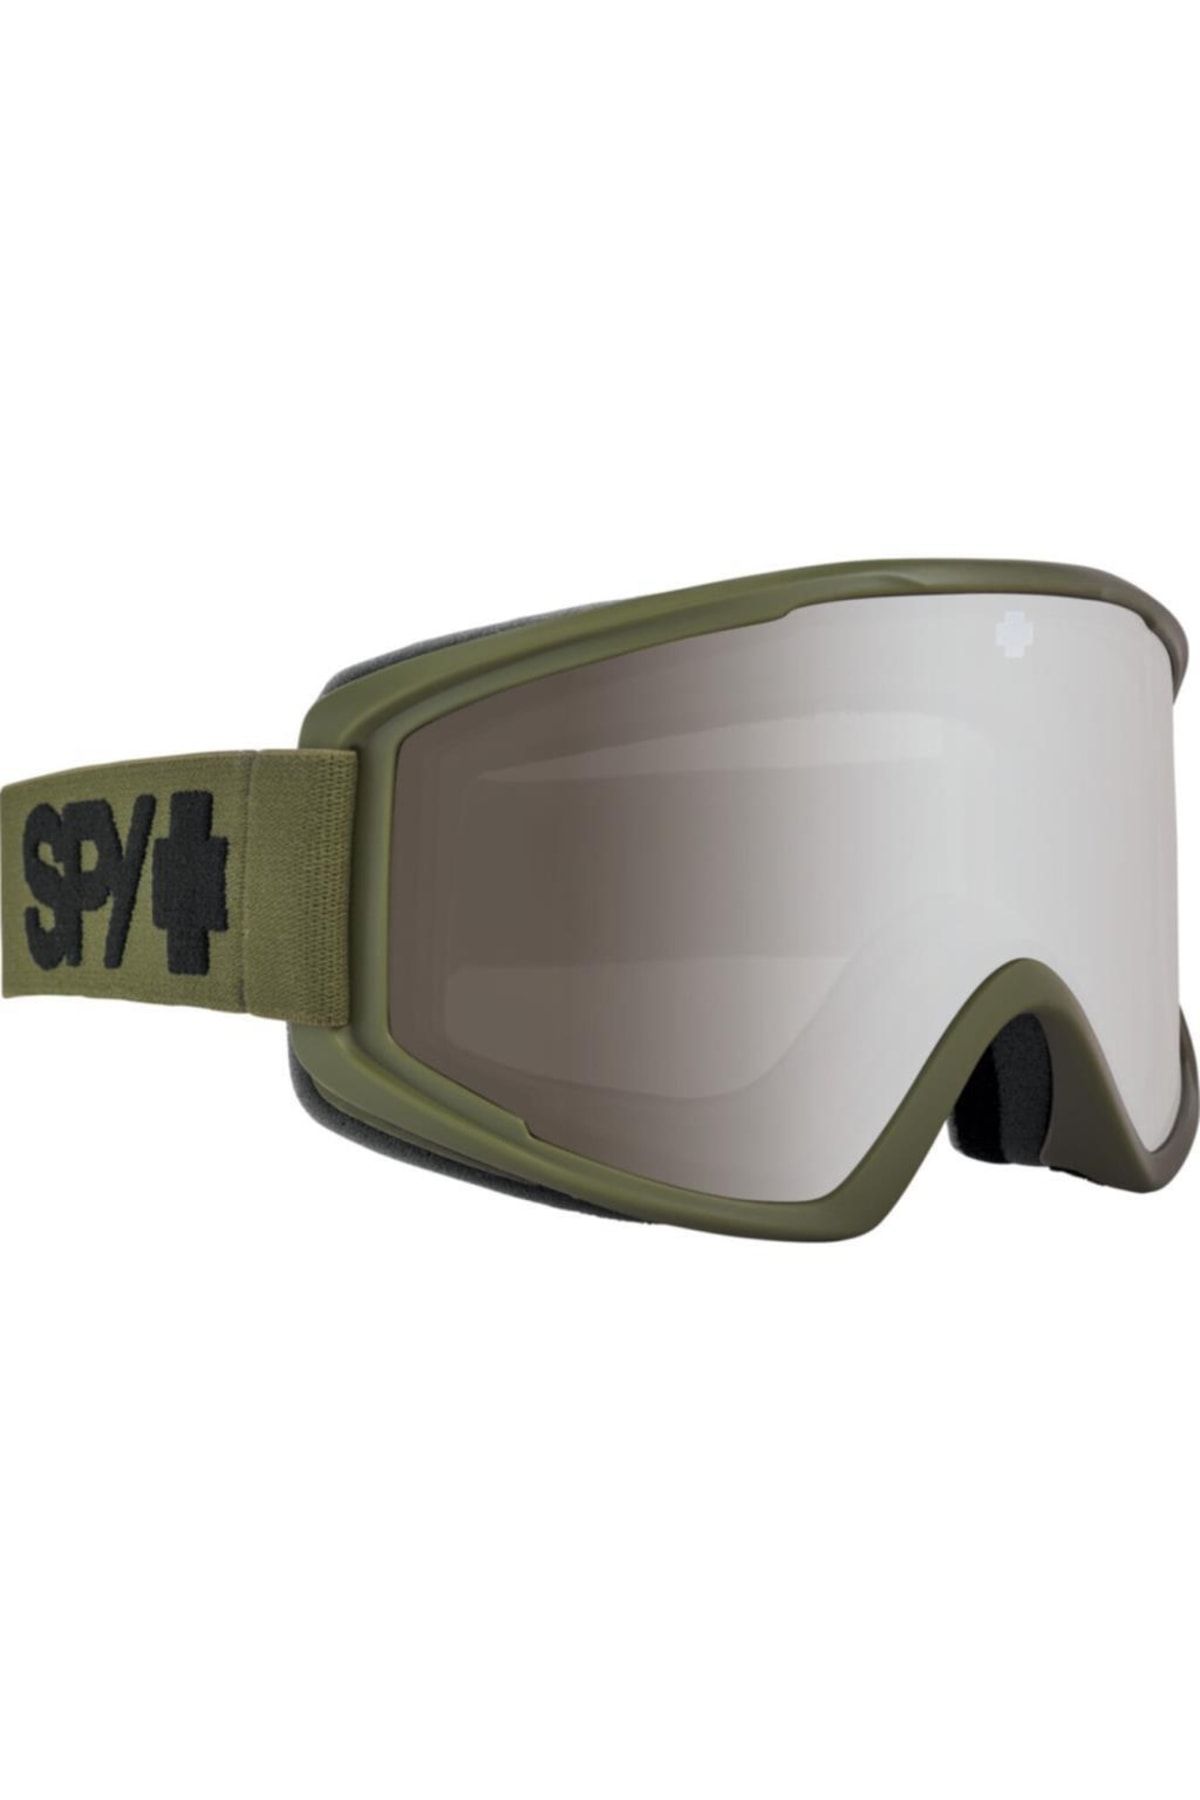 SPY Crusher Elite Kayak Gözlüğü S3 31000174